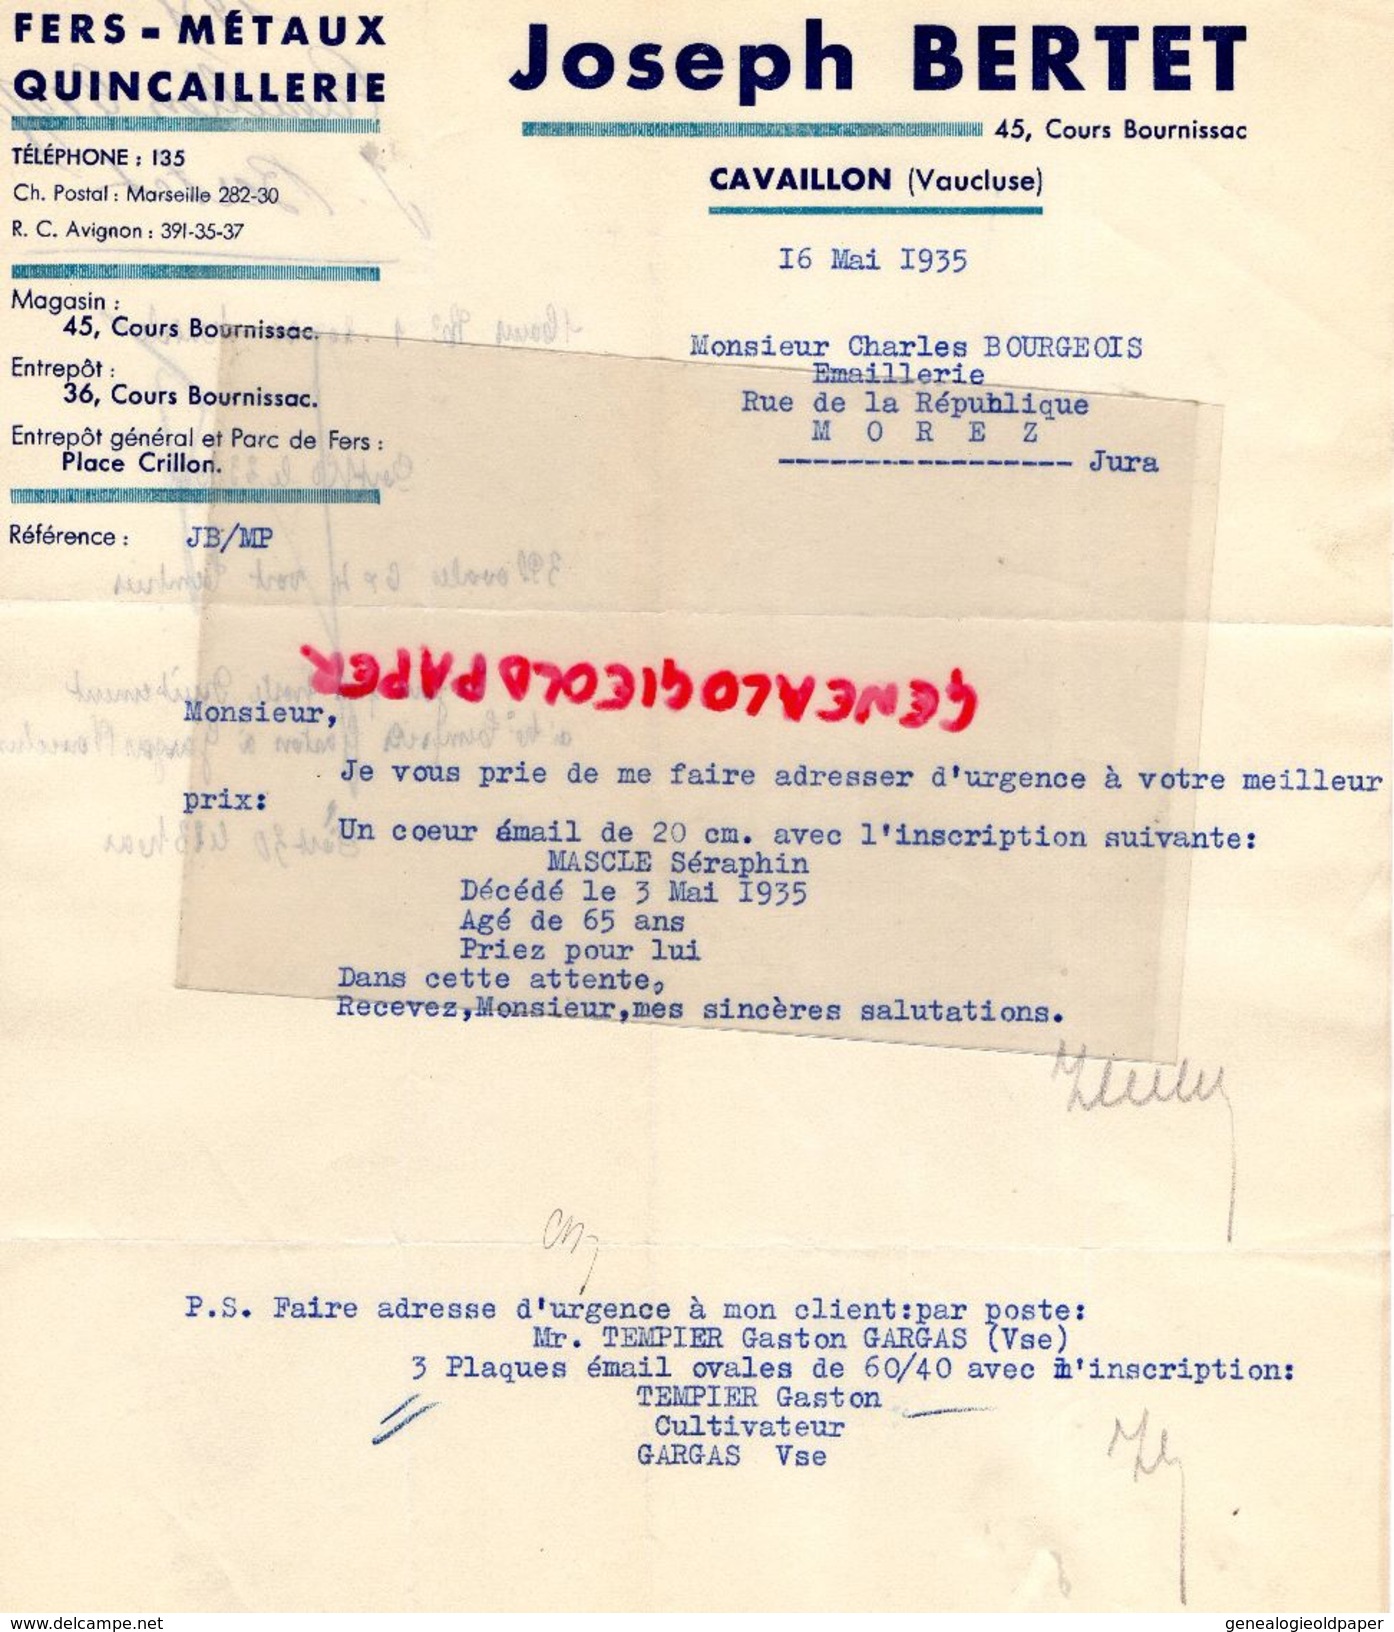 84- CAVAILLON- FACTURE JOSEPH BERTET-FERS METAUX QUINCAILLERIE-45 COURS BOURNISSAC- 1935 - Petits Métiers